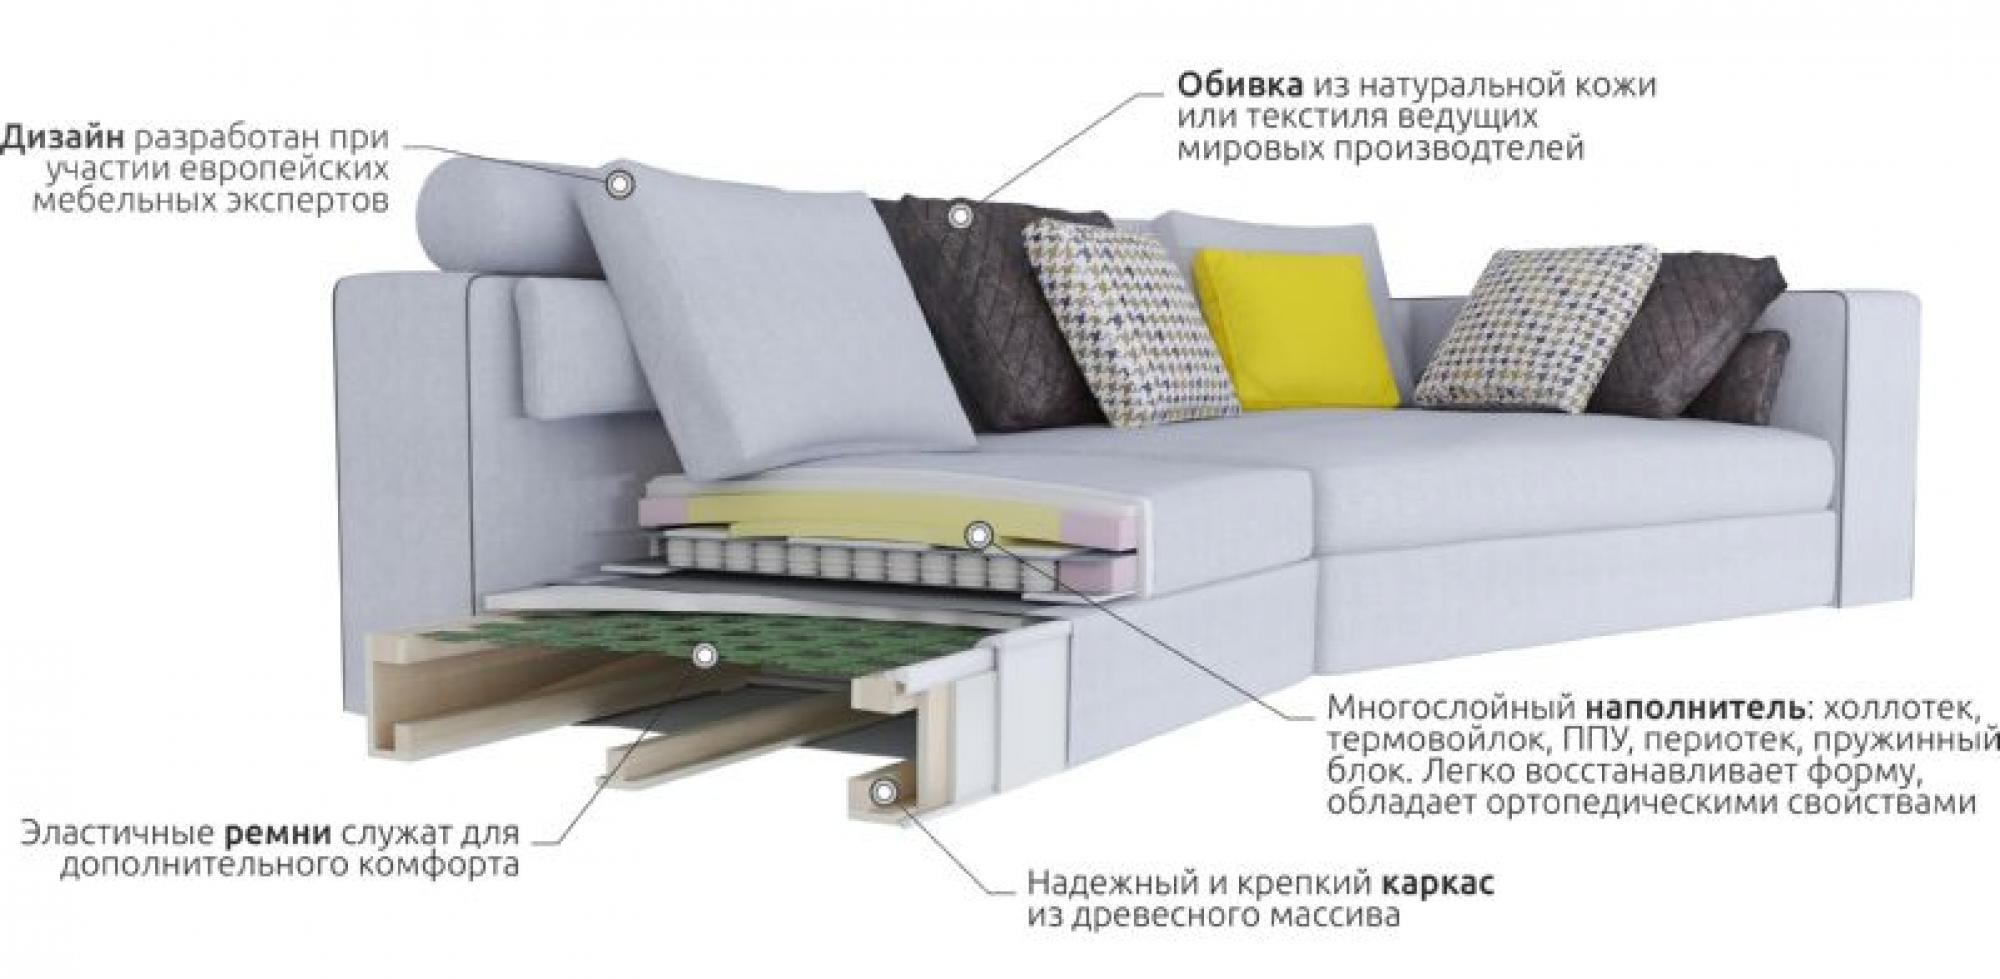 ппу или независимый пружинный блок на диване